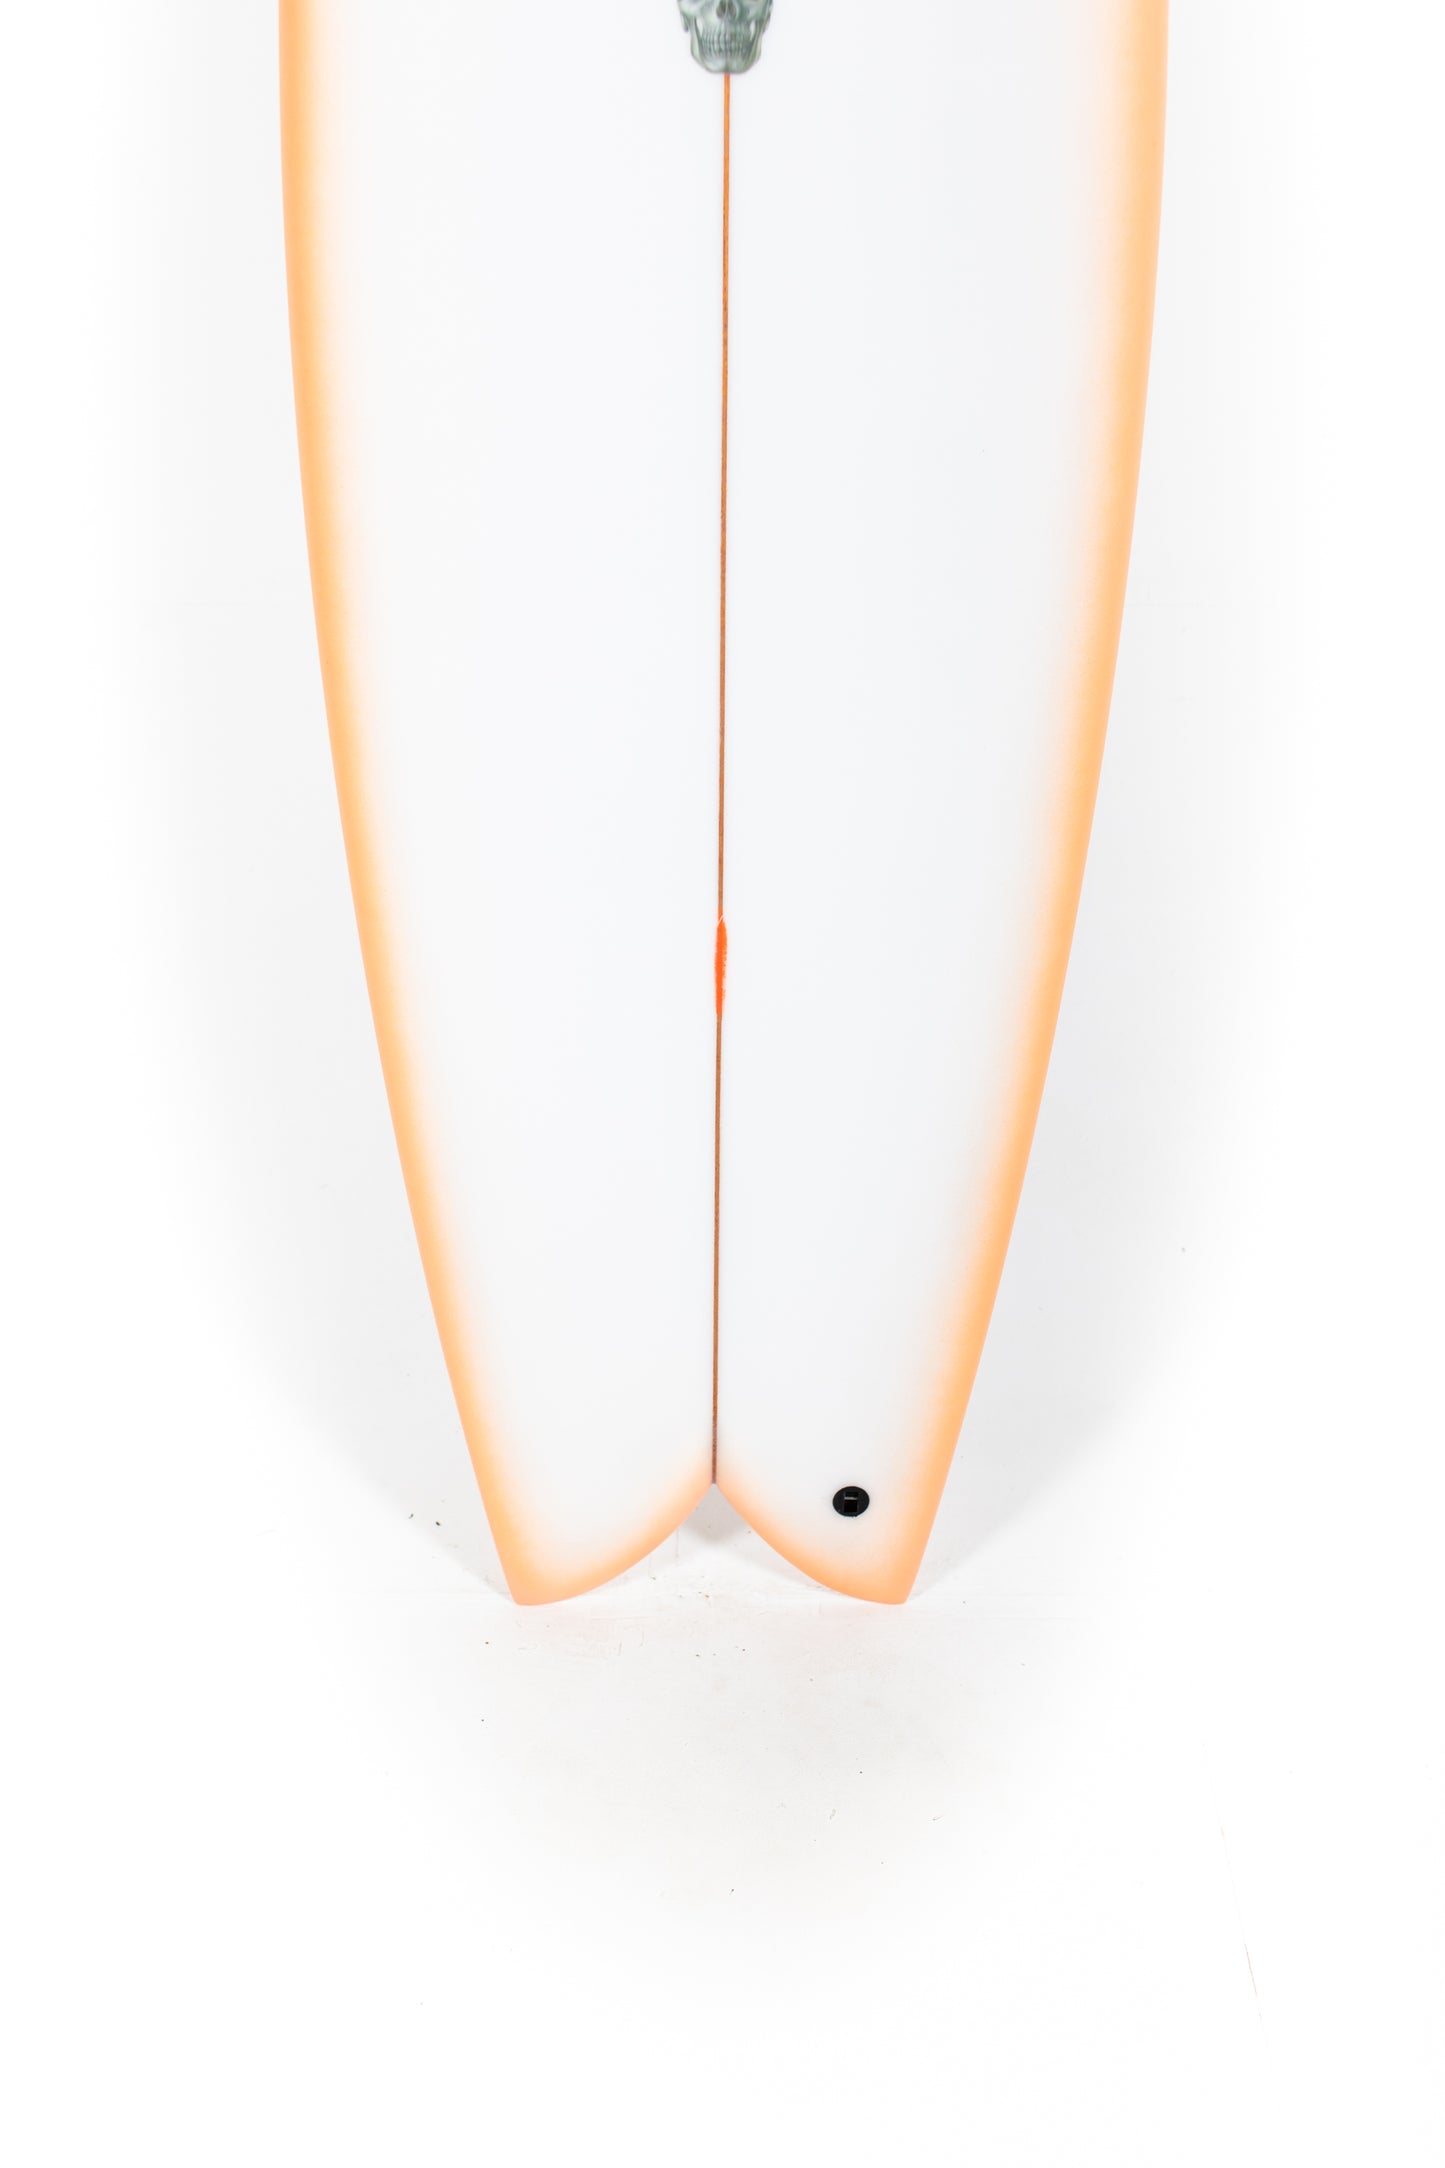 
                  
                    Pukas Surf Shop - Christenson Surfboards - MYCONAUT - 5'7" x 20 3/4 x 2 1/2 - CX04478
                  
                